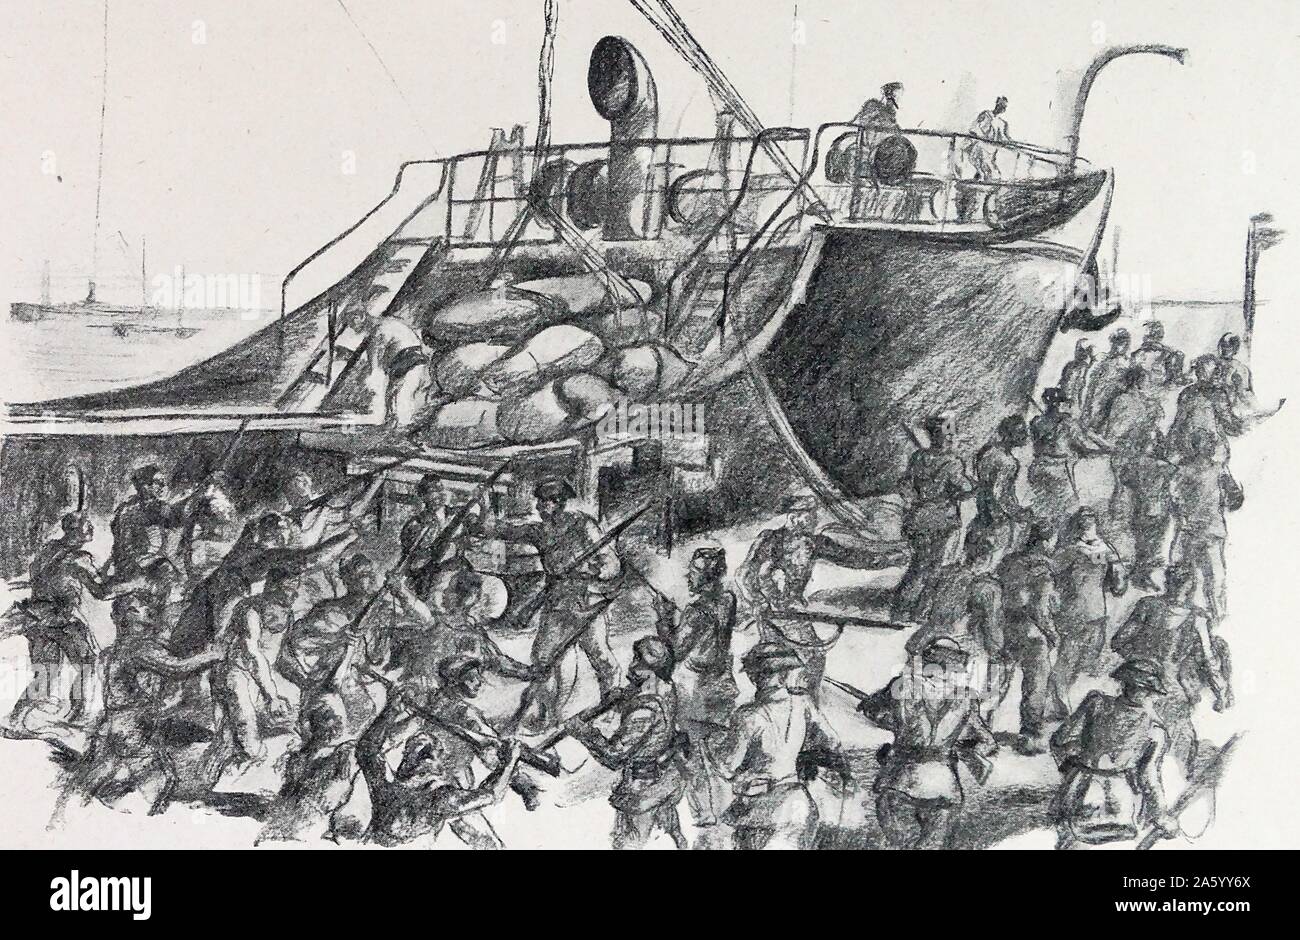 Republikanische Segler sind von der Guardia Civil während des Anfalls der Docks während des spanischen Bürgerkriegs festgenommen. Durch Carlos Saenz de Tejada (1897-1958), spanischer Maler und Illustrator; identifiziert mit der nationalistischen (faschistischen) Seite im spanischen Bürgerkrieg. Stockfoto